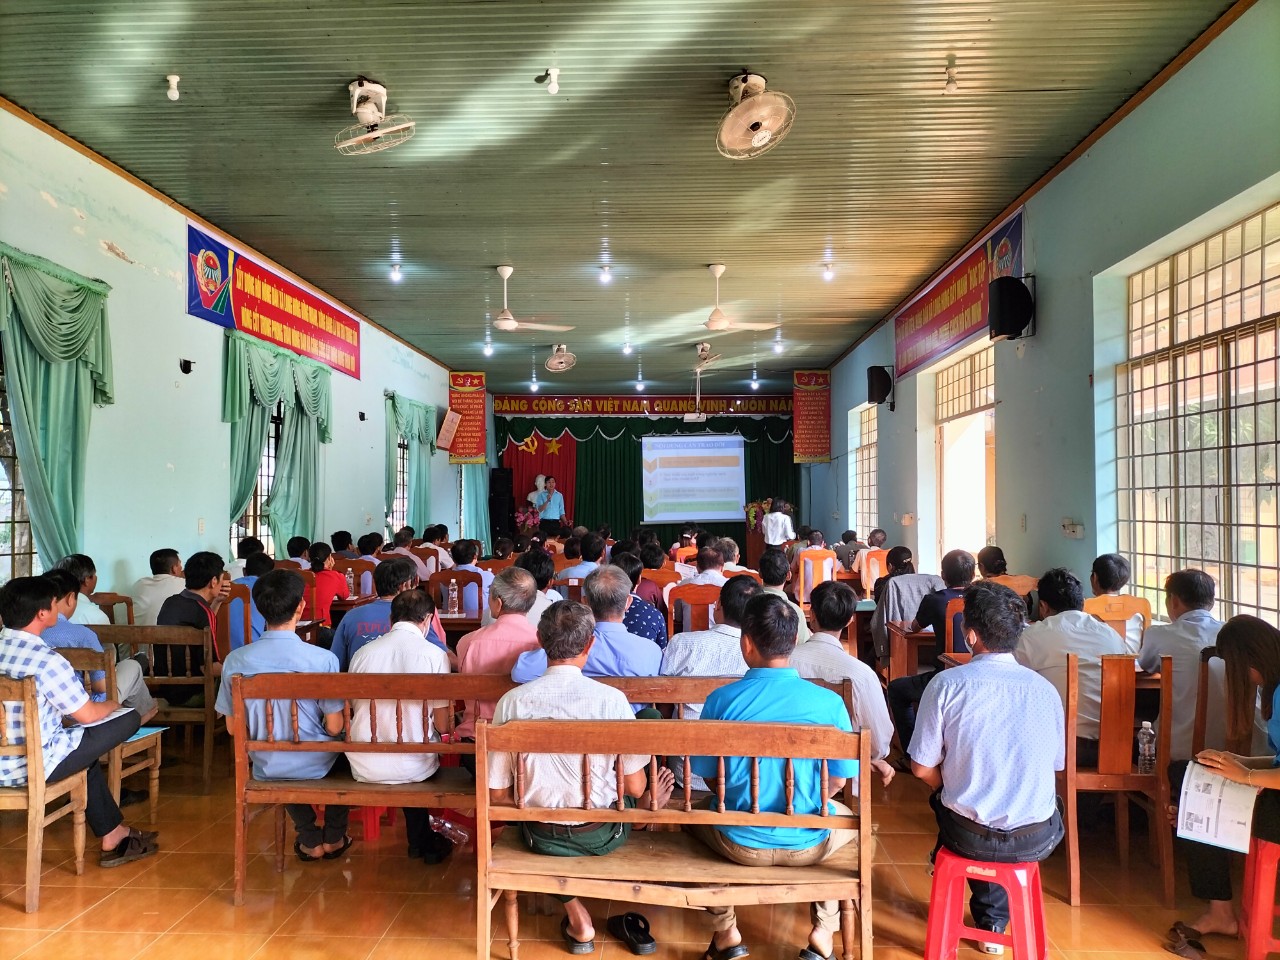 100 nông dân của huyện Phú Riềng được triển khai thực hiện Đề án “Hội Nông dân với các mô hình sản xuất nông nghiệp sạch, mỗi xã một sản phẩm, giai đoạn 2021-2025”